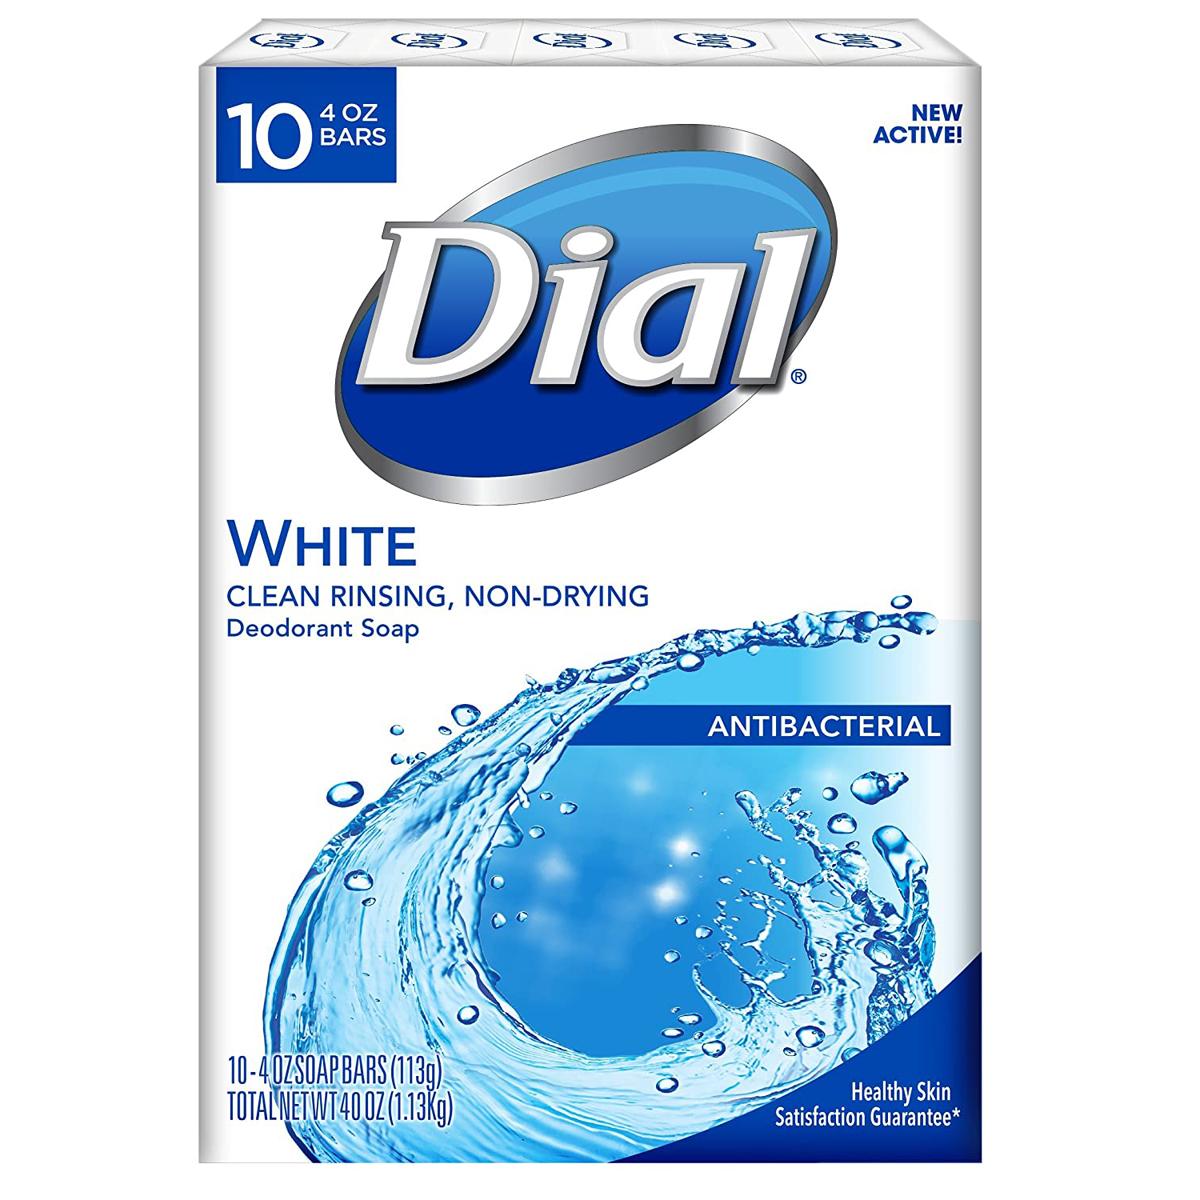 10 Dial Antibacterial Bar Soap for $3.74